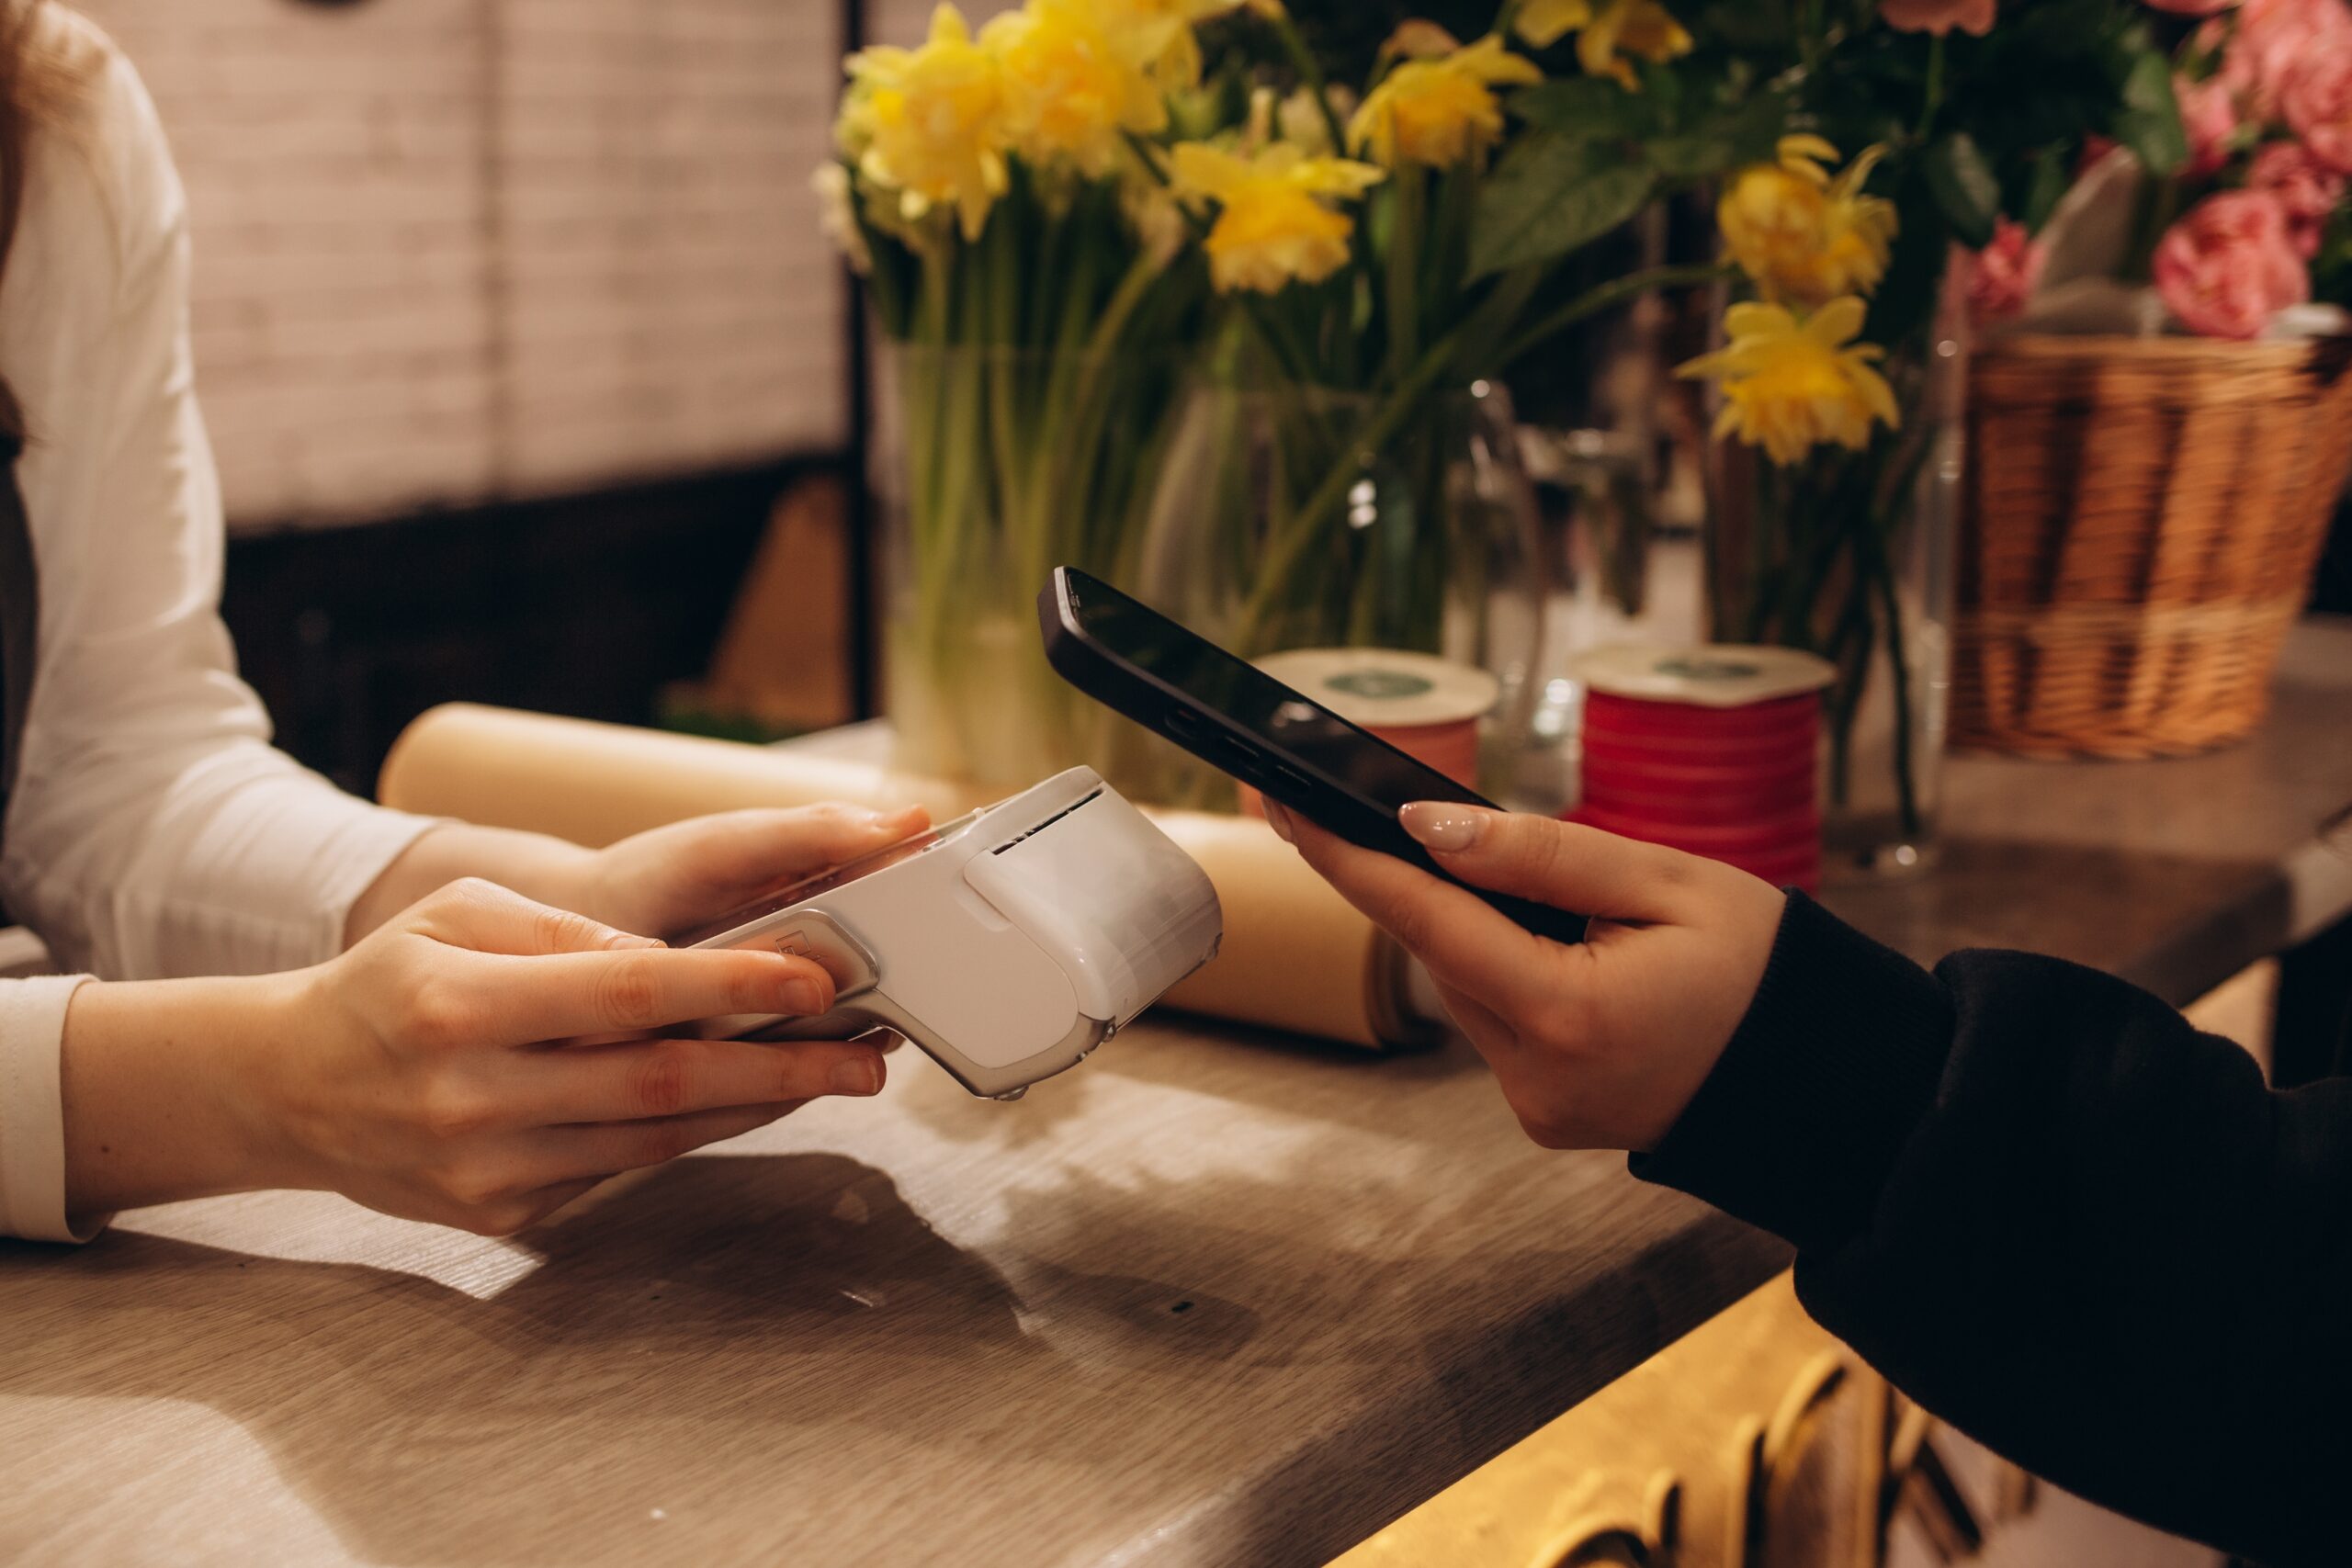 Płatność telefonem za pomocą terminala kart płatniczych w kwiaciarni. Gotówka jest tu rzadko przyjmowana.